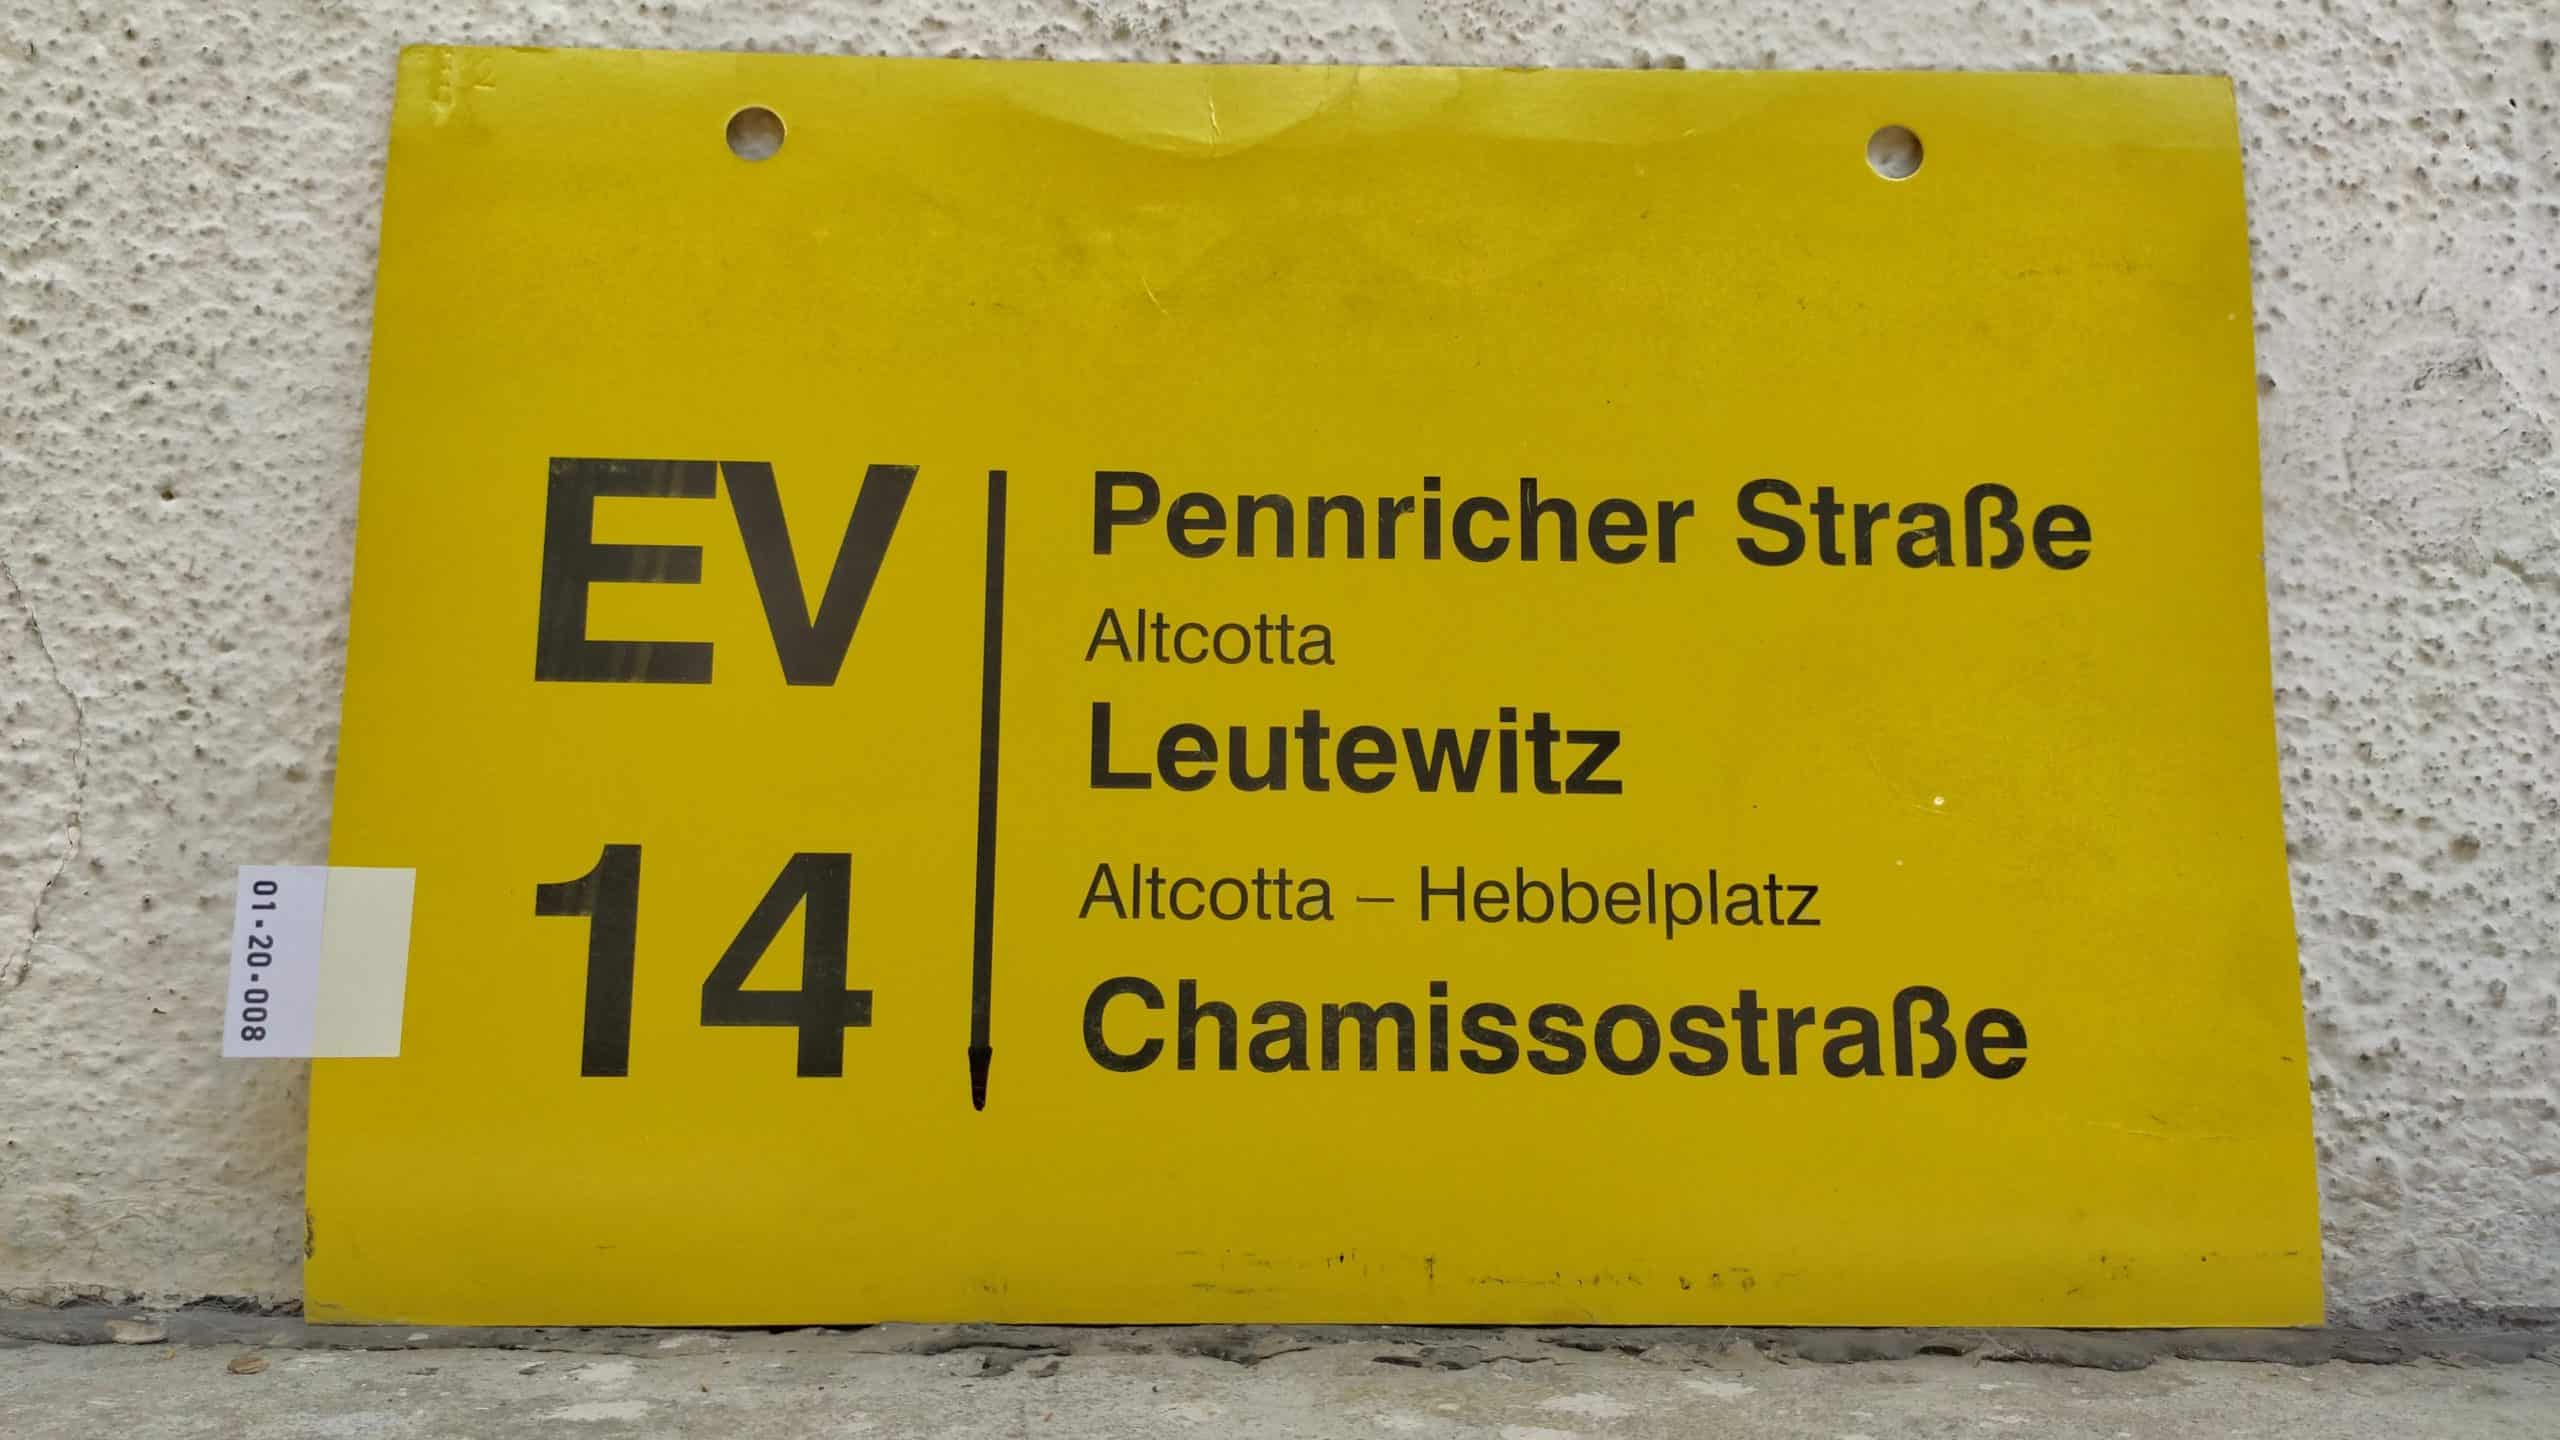 EV 14 Pennricher Straße – Chamissostraße